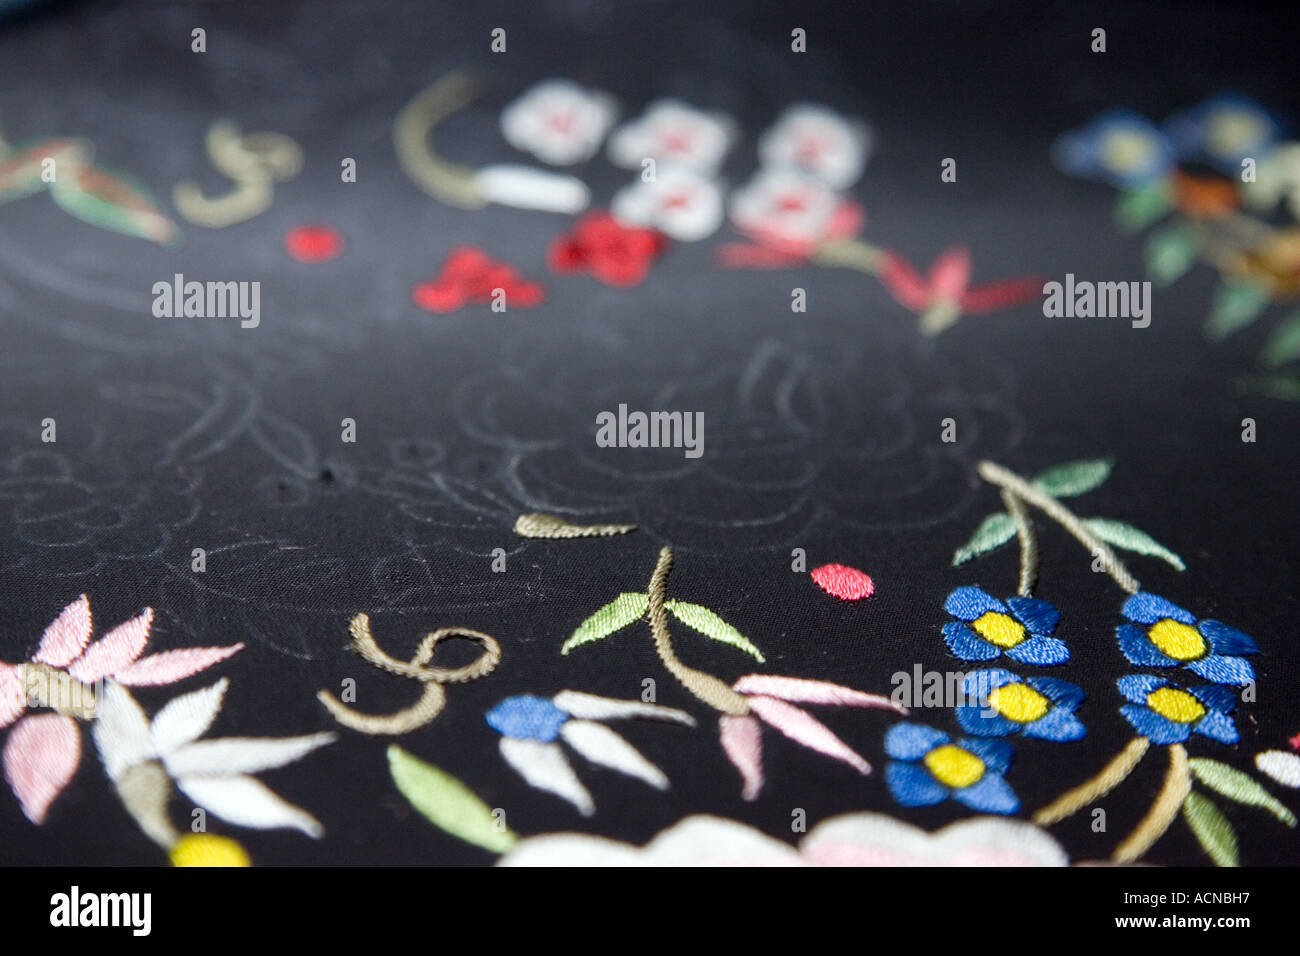 Scialle di manila immagini e fotografie stock ad alta risoluzione - Alamy